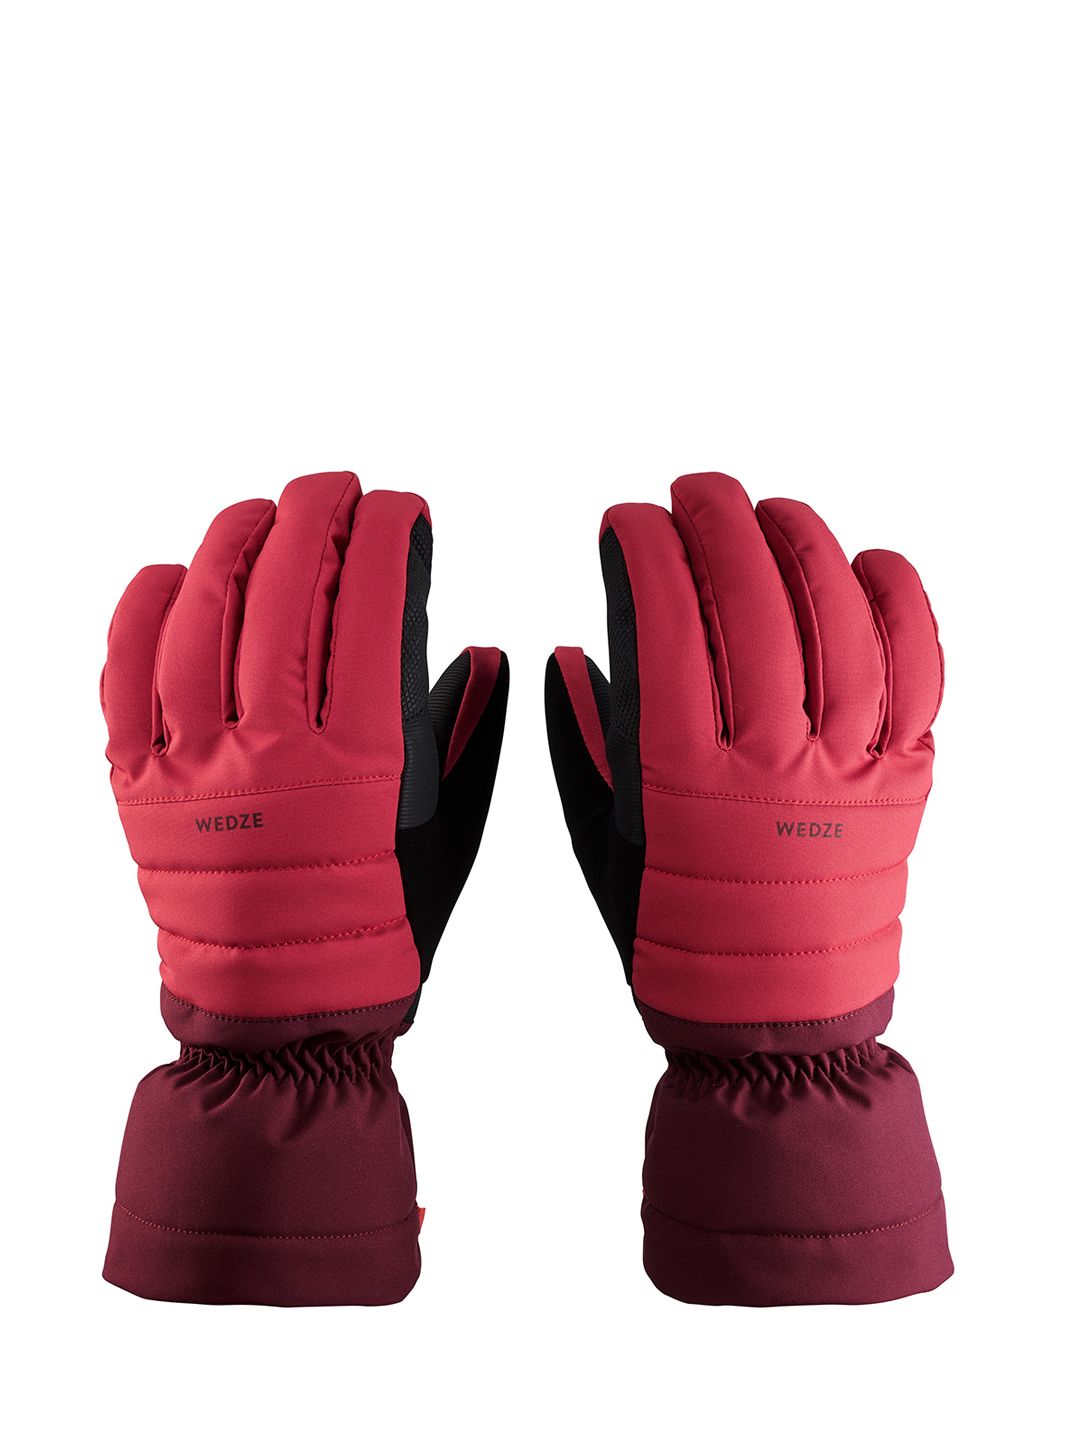 WEDZE By Decathlon Unisex Downhill Ski Gloves 500 Price in India